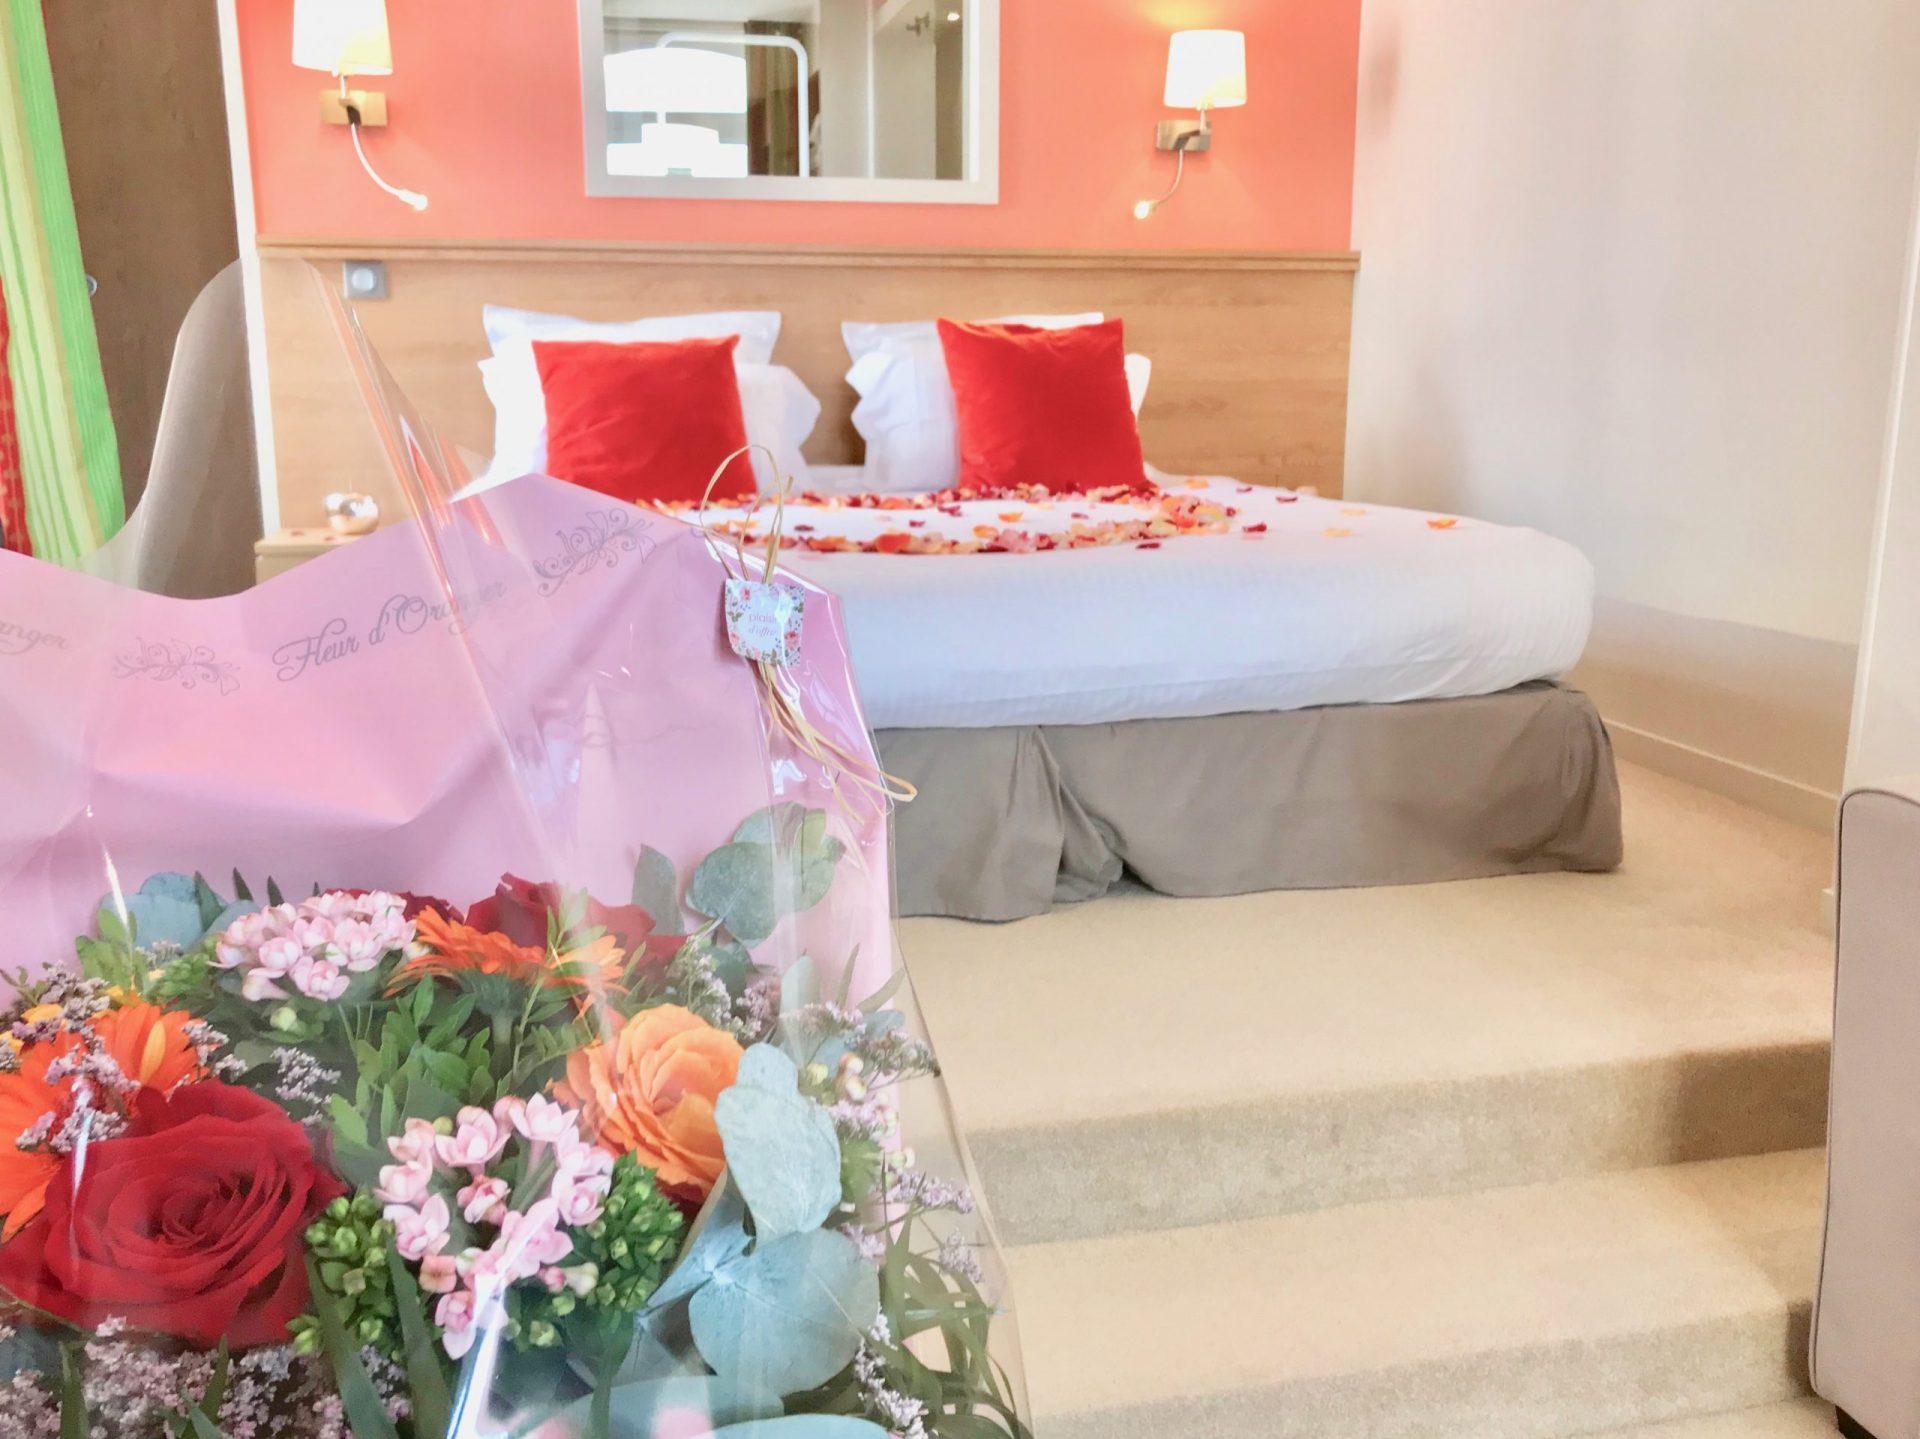 Séjour romantique à l'Hôtel Outre-Mer : Décoration de la chambre avec un magnifique bouquet de fleurs fraîches pour la Saint Valentin.